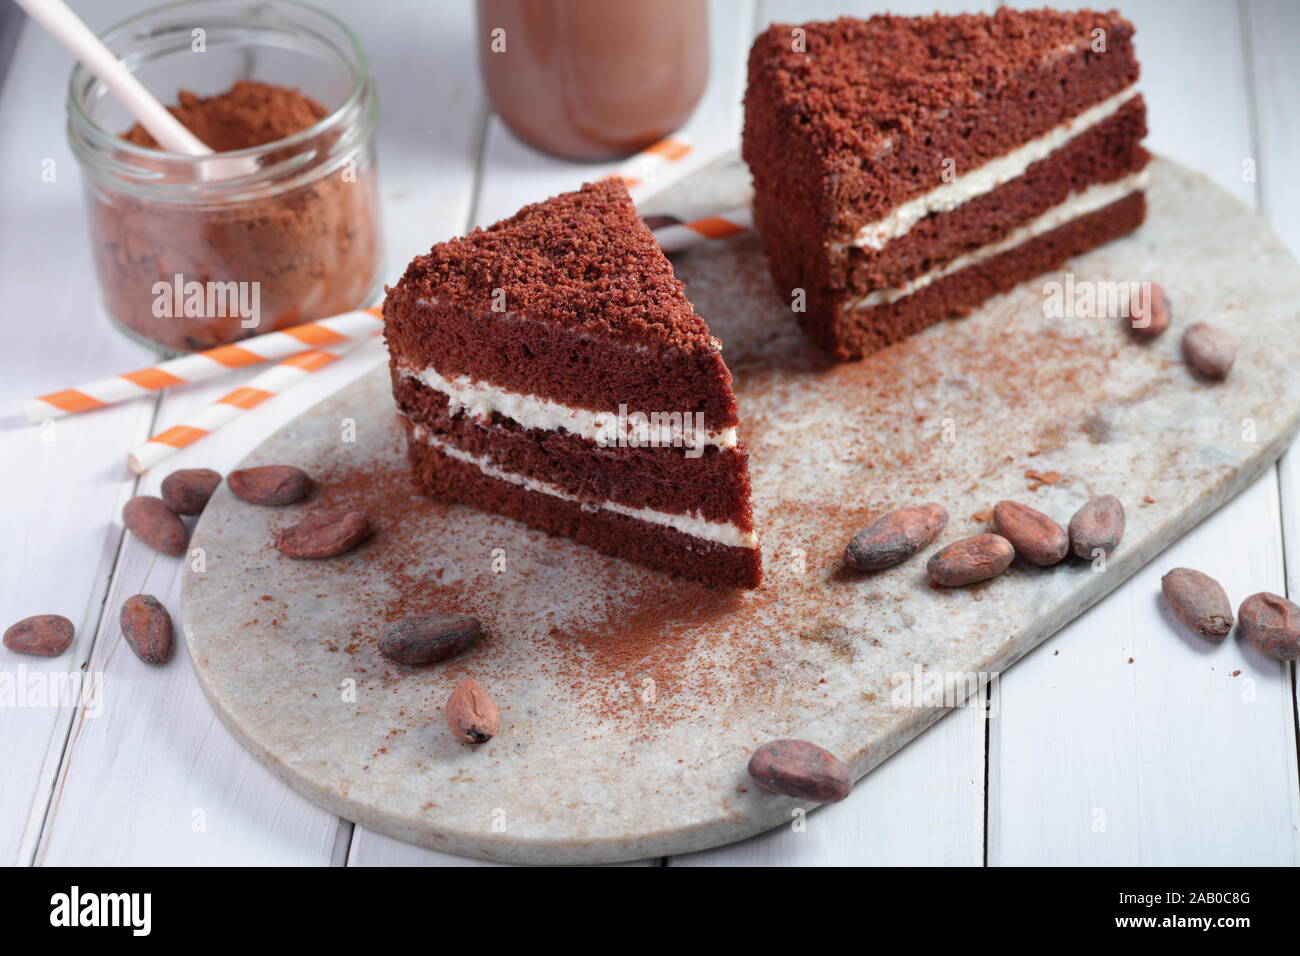 Zwei Scheiben Schokolade Kuchen, heiße Schokolade in einer Flasche, Milchpulver, Kakao und kakaohaltige Bohnen auf einem rustikalen Tisch Stockfoto